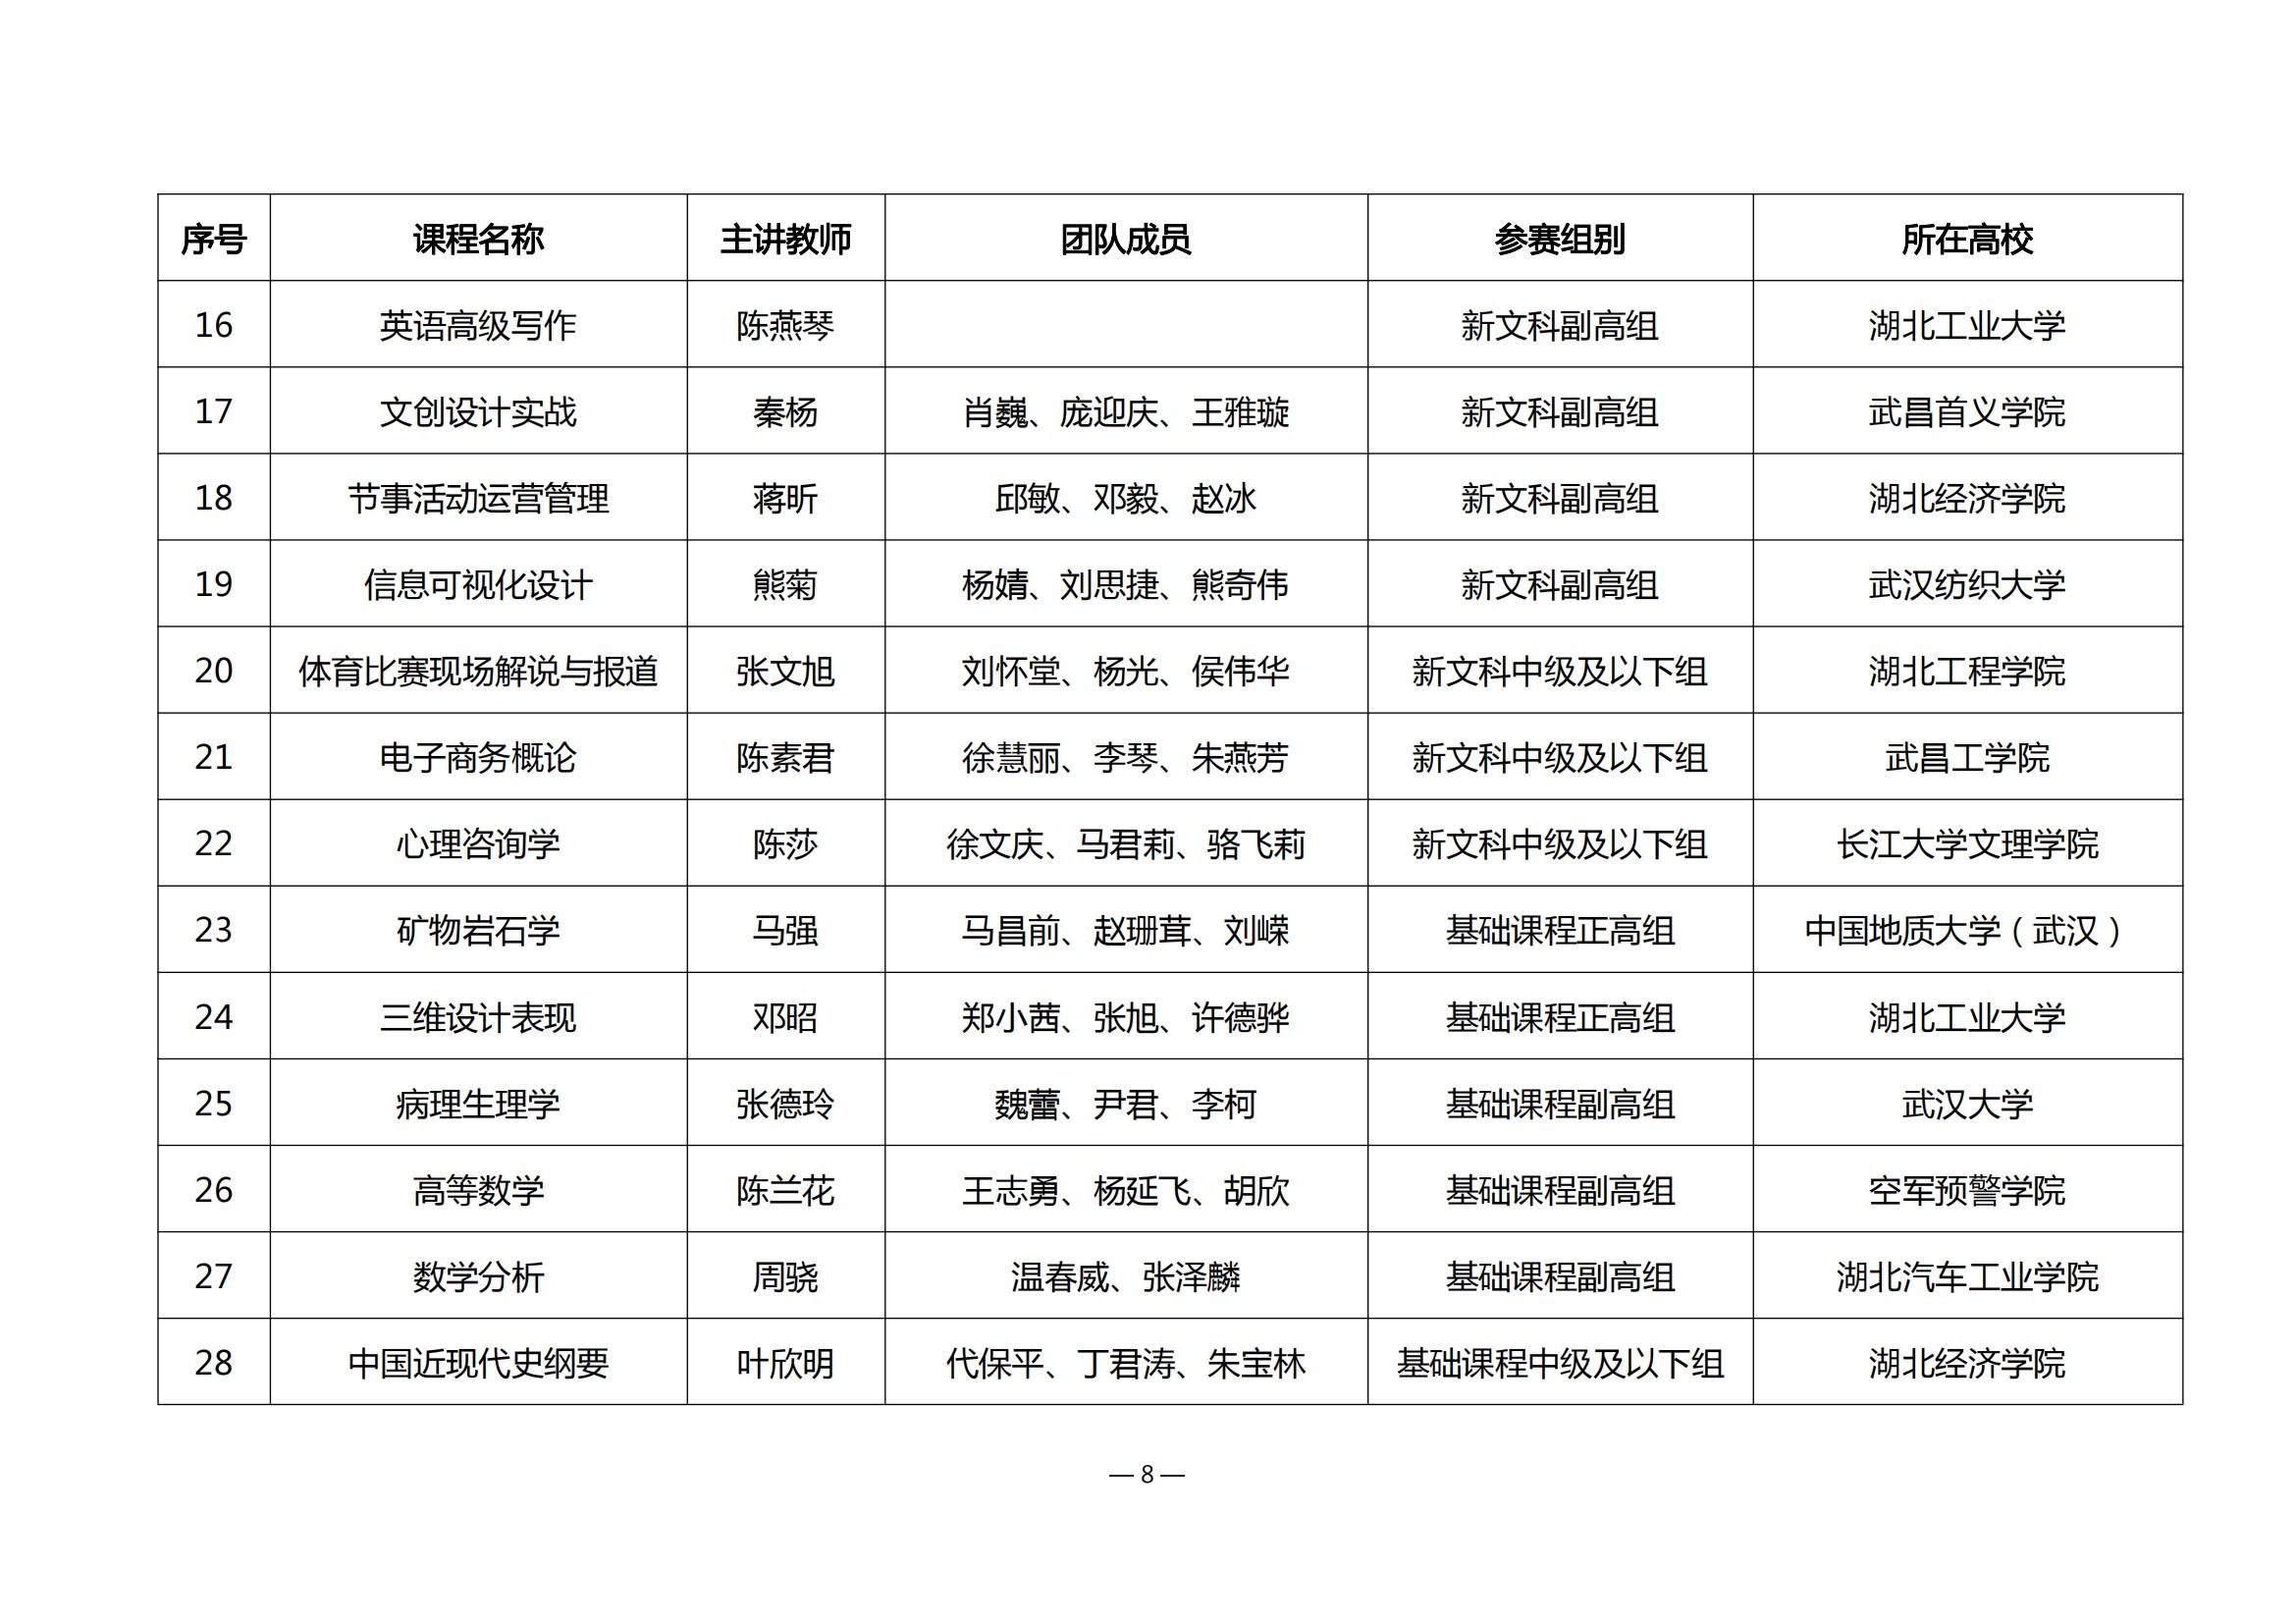 第四届湖北省高校教师教学创新大赛评审结果公示_07.jpg